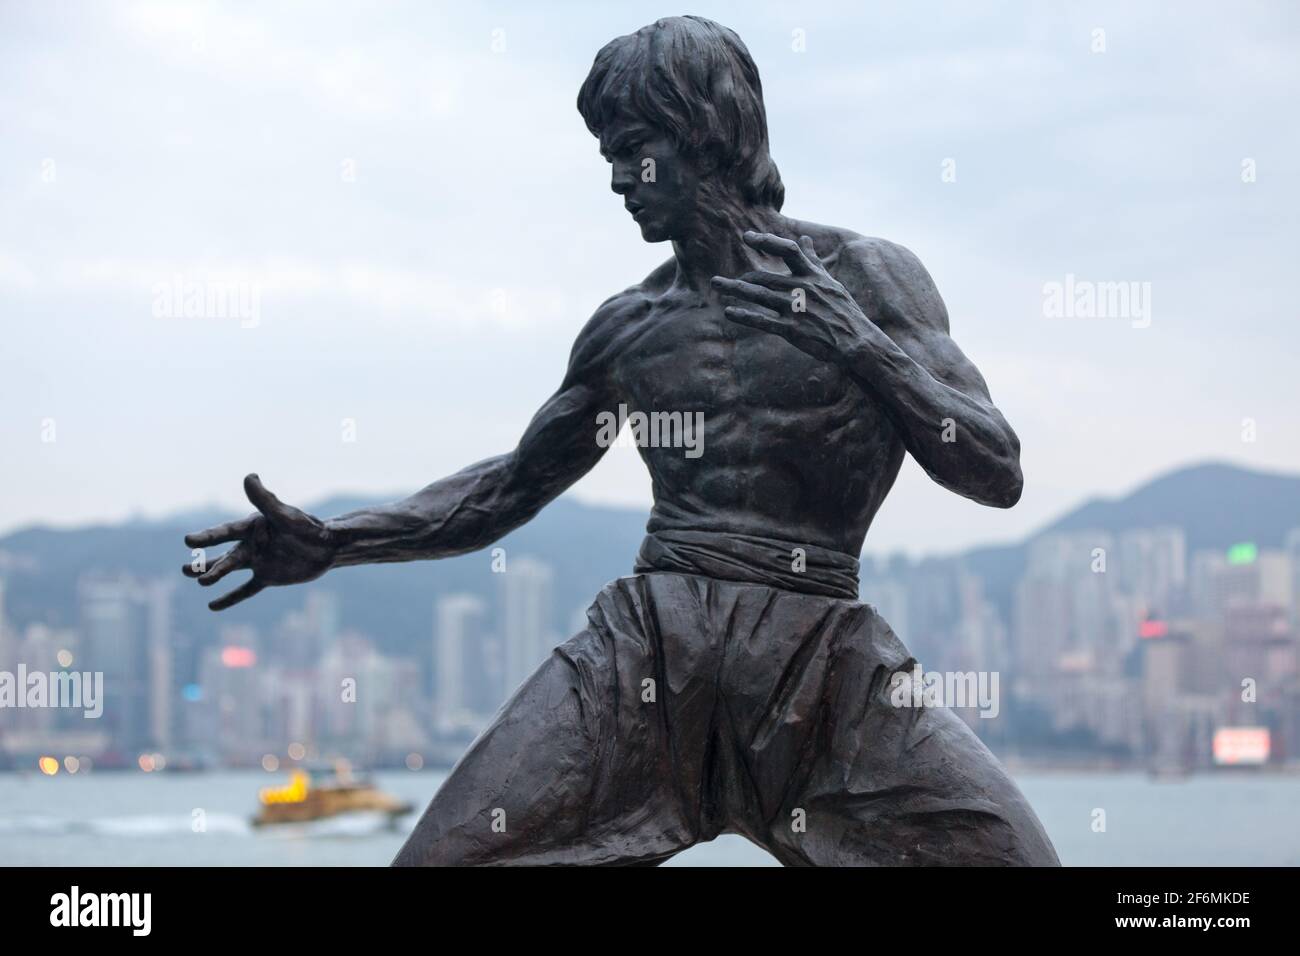 Hongkong, China - März 24 2014: Die Bruce Lee Statue in Hongkong ist eine bronzene Gedenkstatue des Kampfkünstlers Bruce Lee, die vom Bildhauer Ca Stockfoto